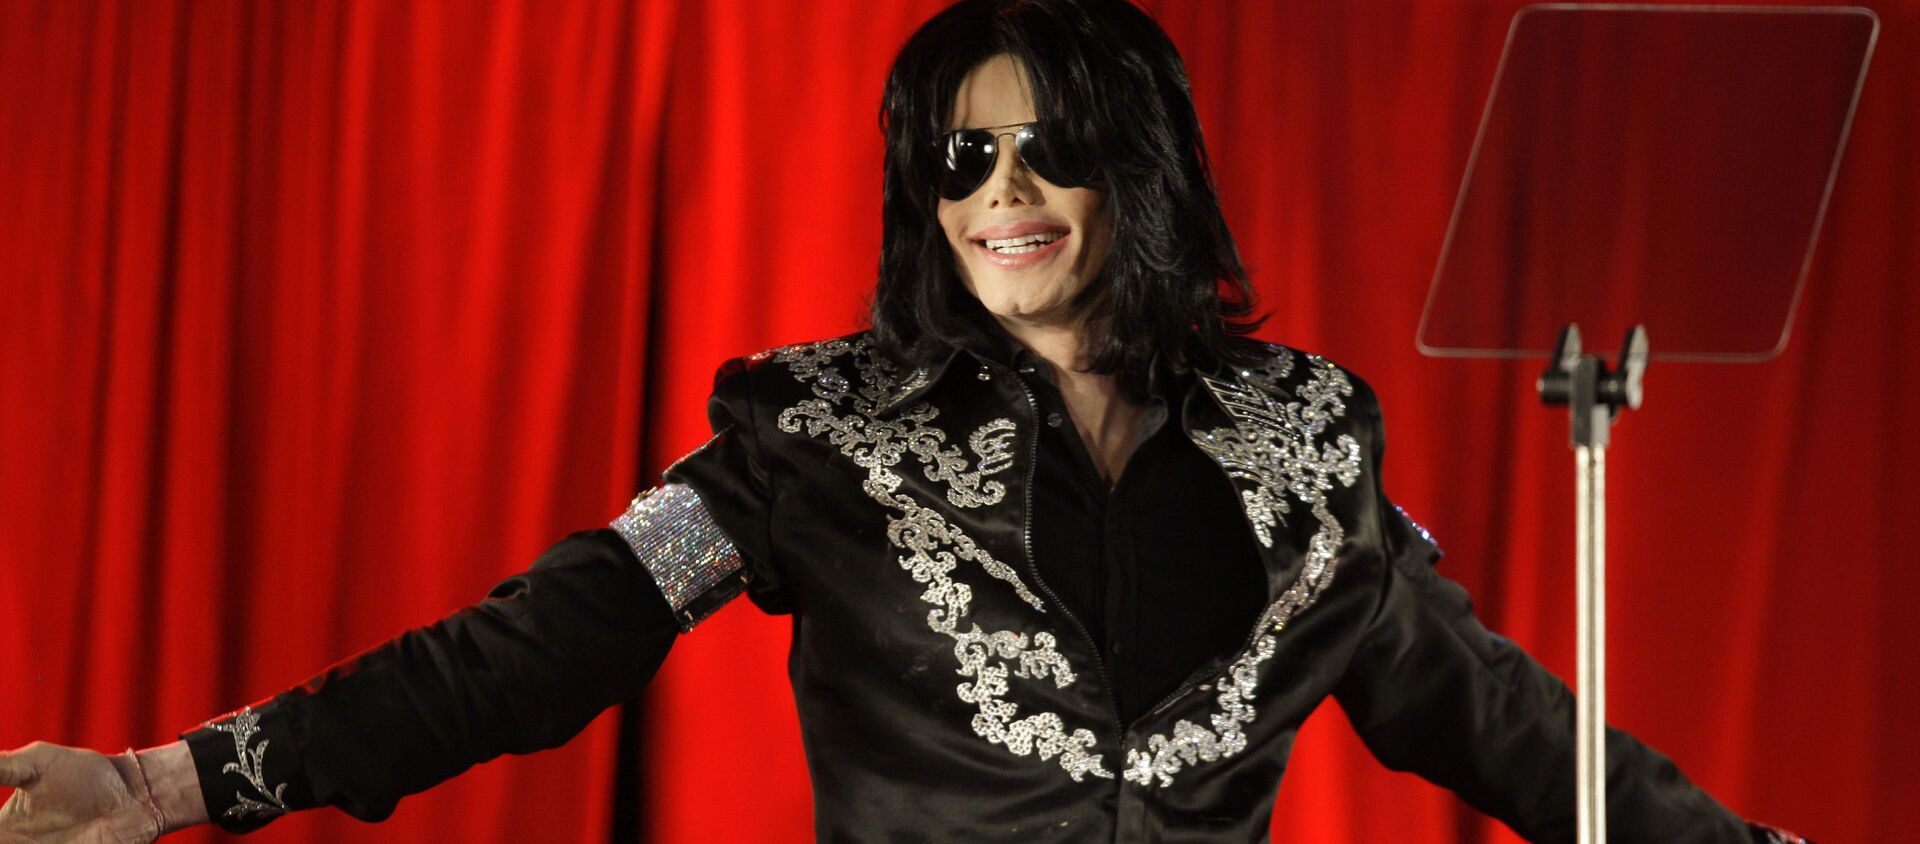 Американский певец Майкл Джексон, 2009 год - Sputnik Արմենիա, 1920, 14.10.2019